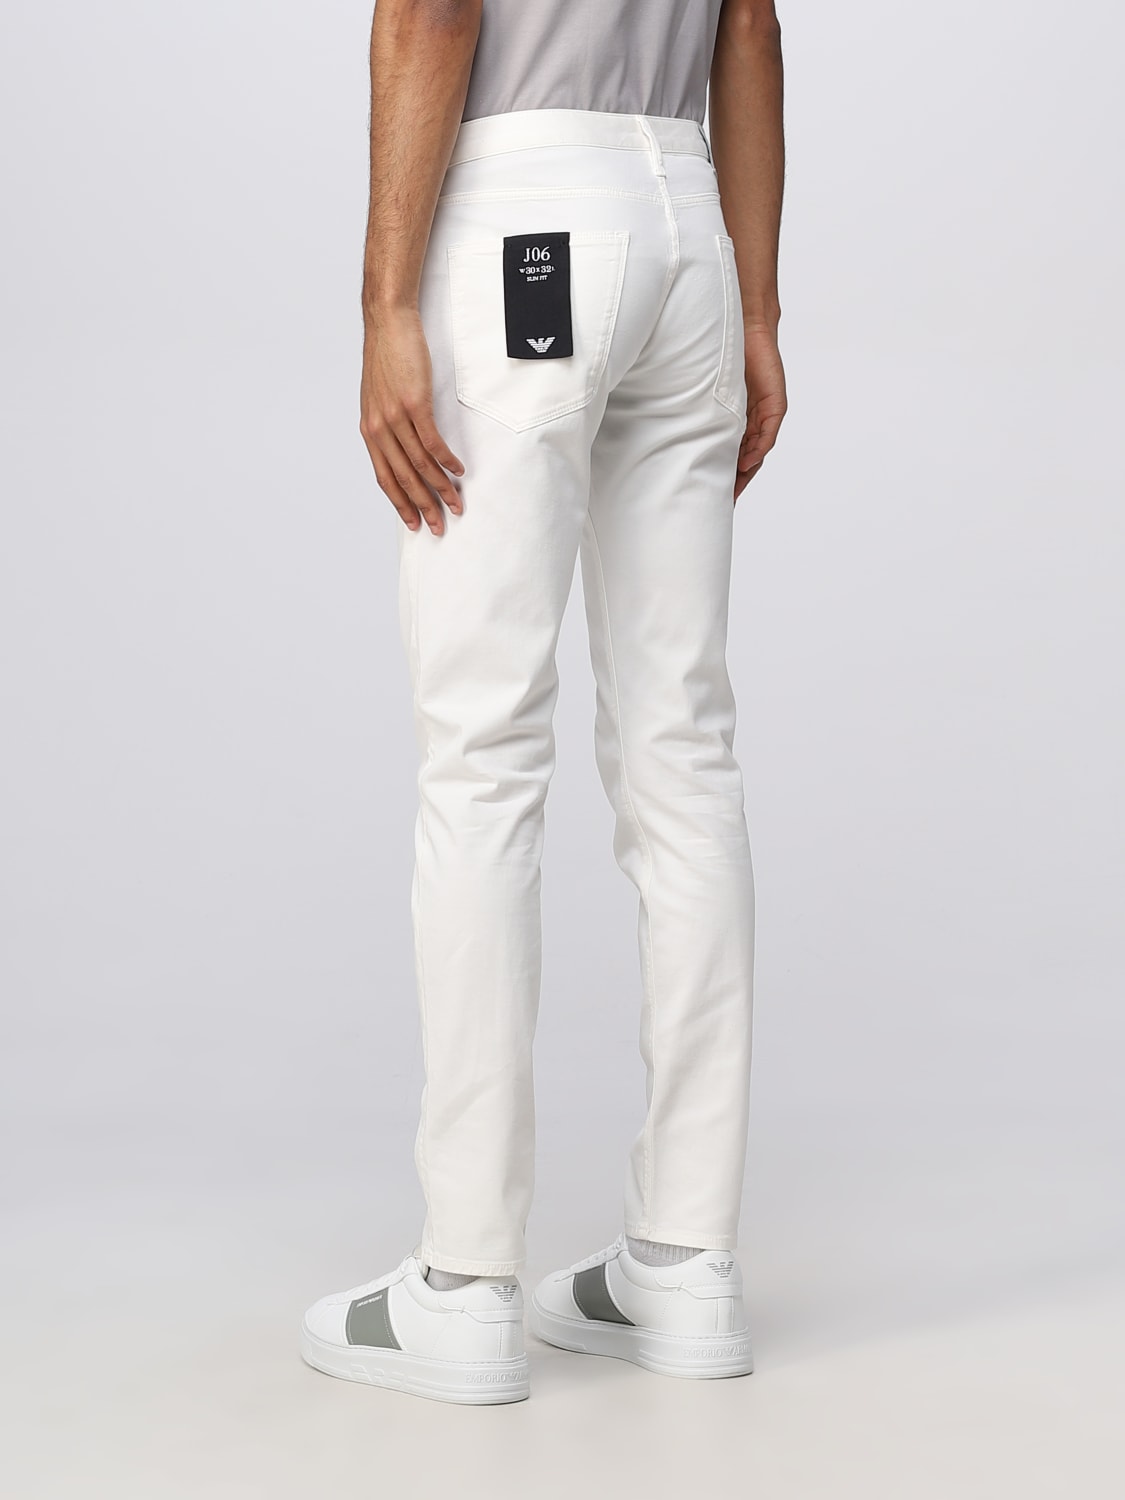 ARMANI: Jeans para hombre, Blanco | Emporio Armani 8N1J061GN0Z en GIGLIO.COM